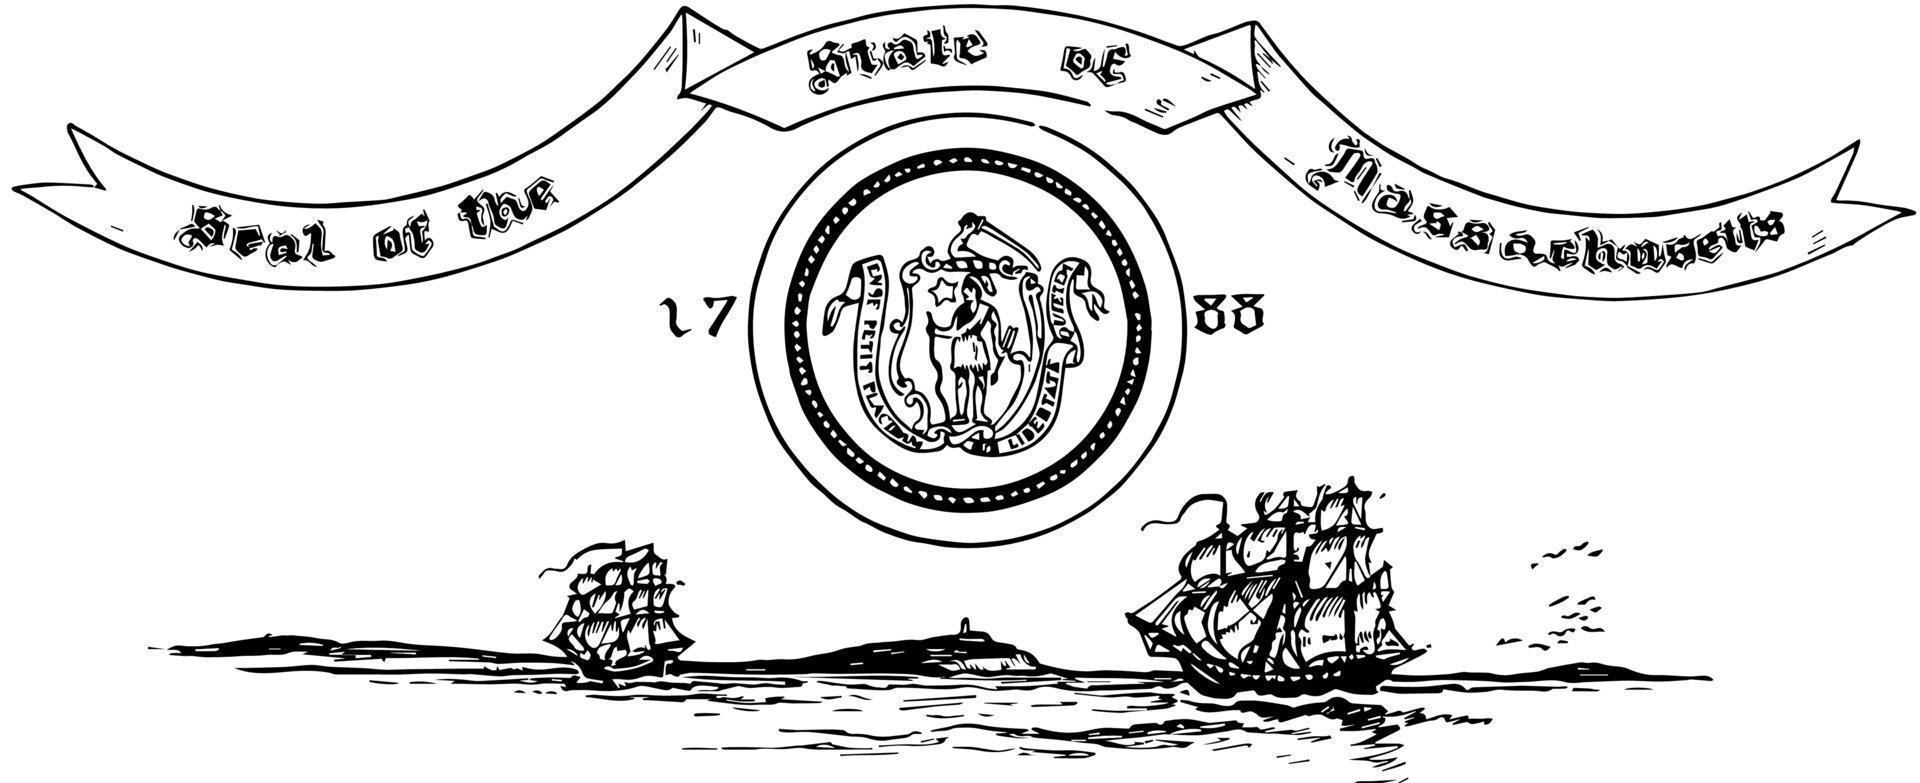 de Verenigde staten zegel van Massachusetts in 1788, wijnoogst illustratie vector